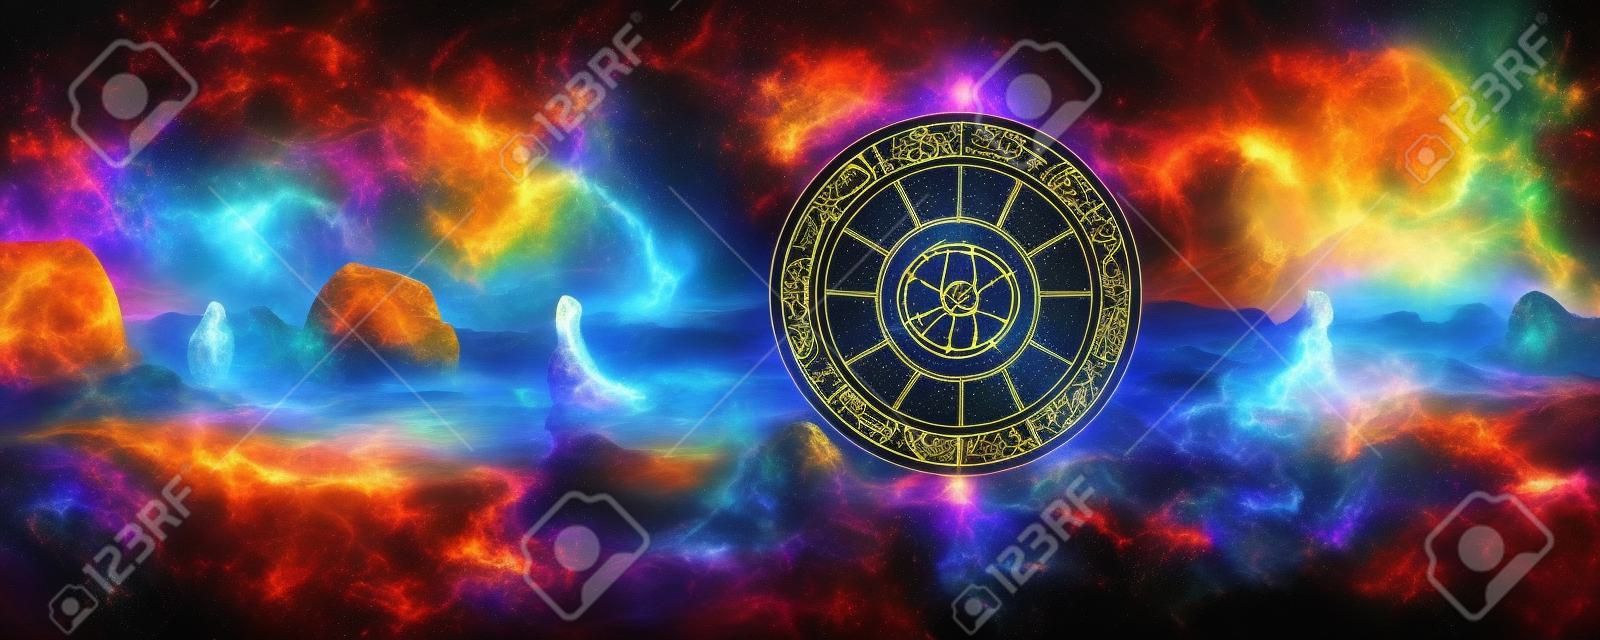 Sfondo di simboli zodiacali sacri, astrologia, alchimia, magia, stregoneria e cartomanzia. pittura digitale generata da ai.